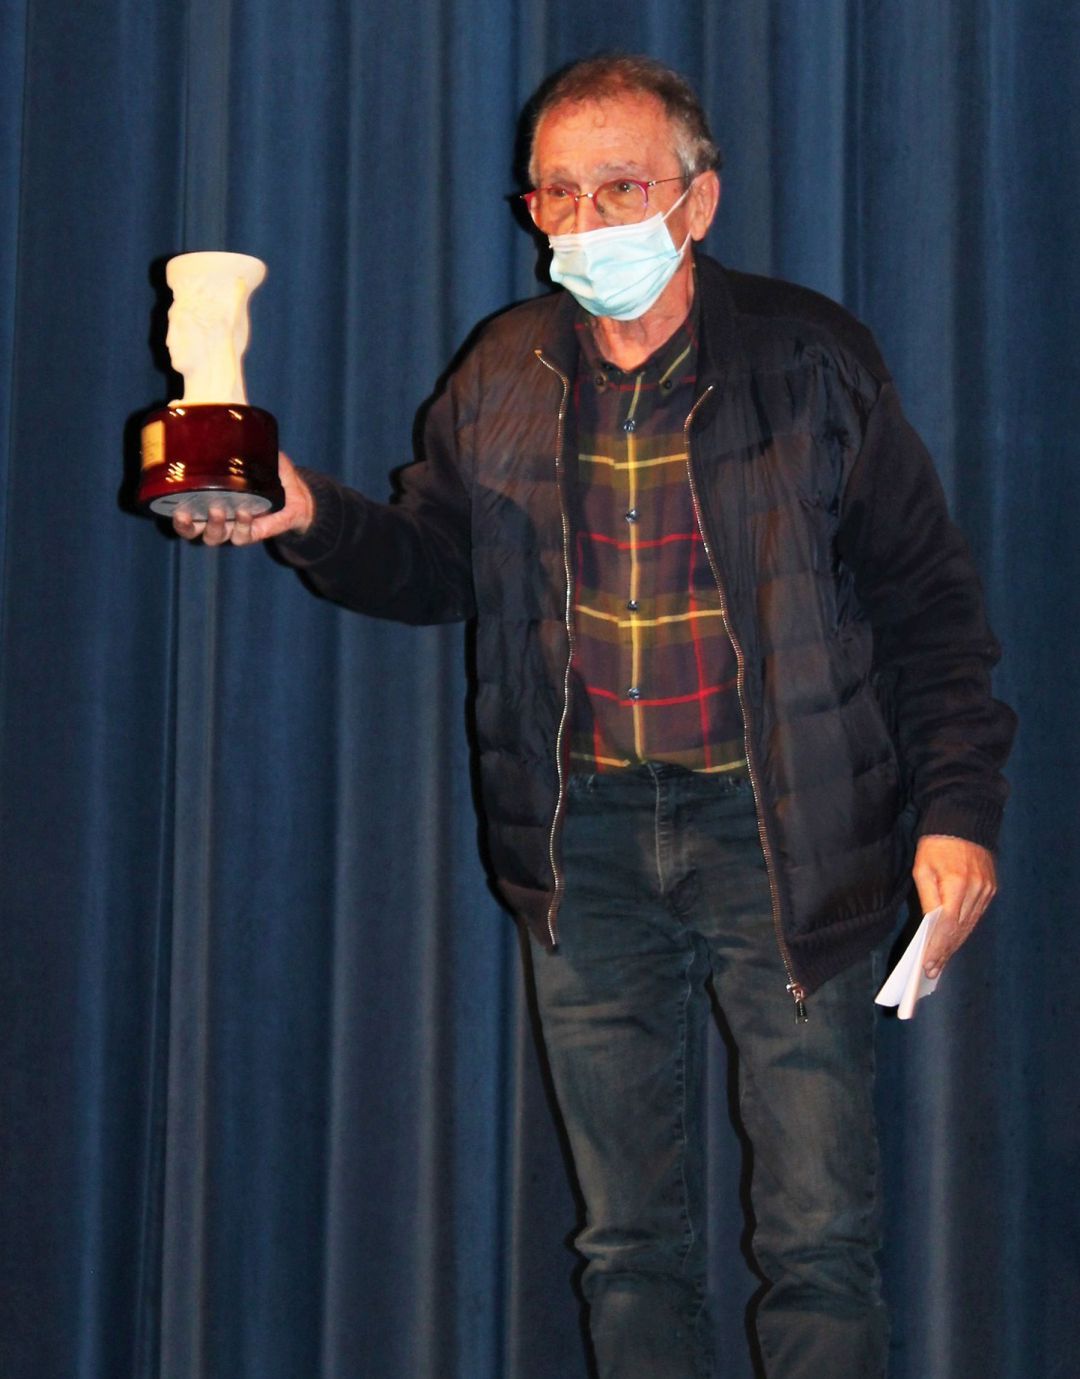 El periodista, escriptor, actor i director teatral en la imatge amb la deesa Tanit en la mà com a guanyador del premi Evarist García